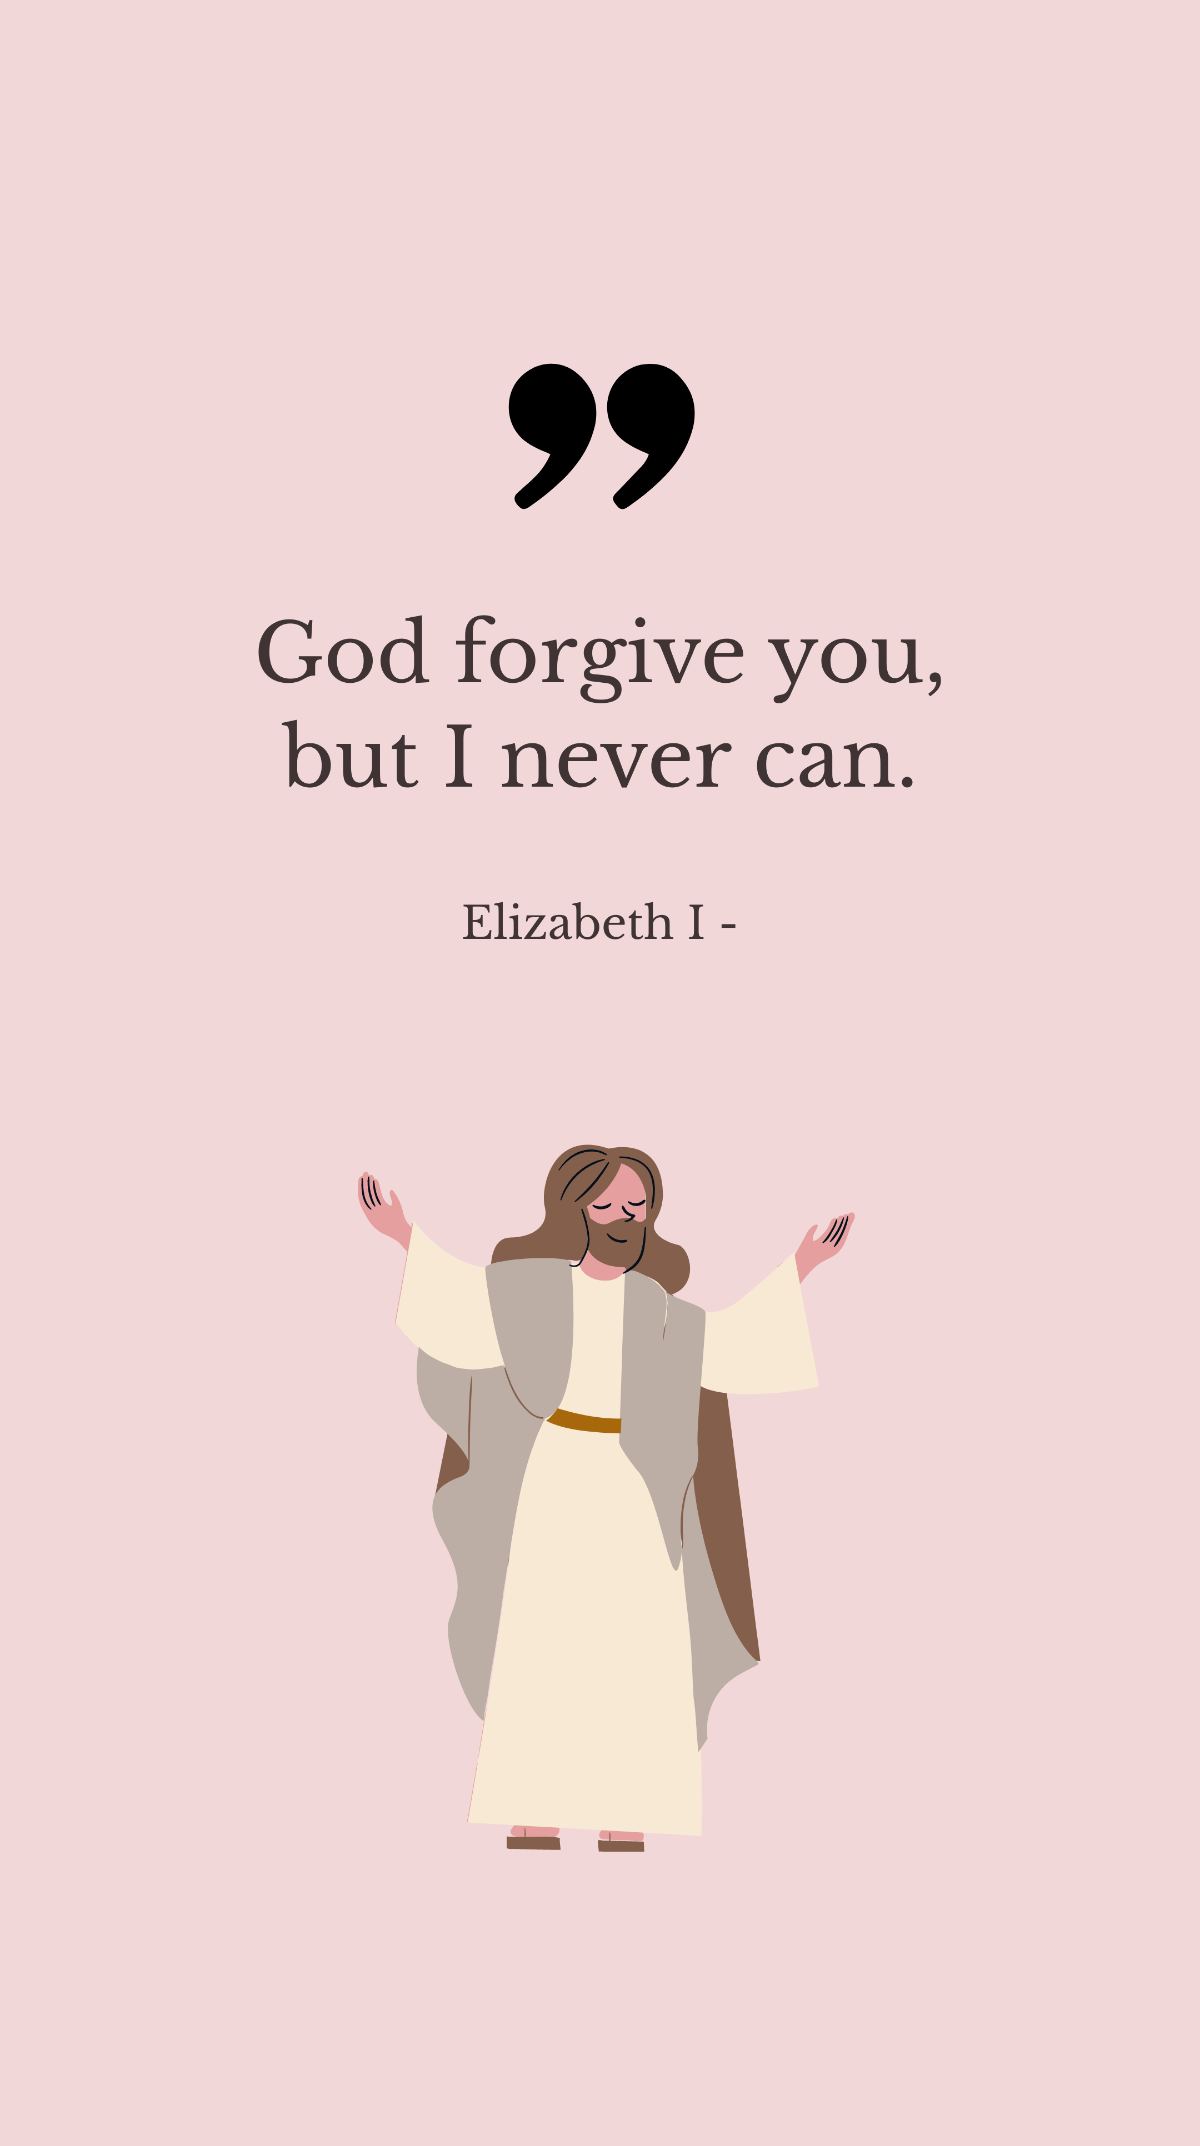 Elizabeth I - God forgive you, but I never can.